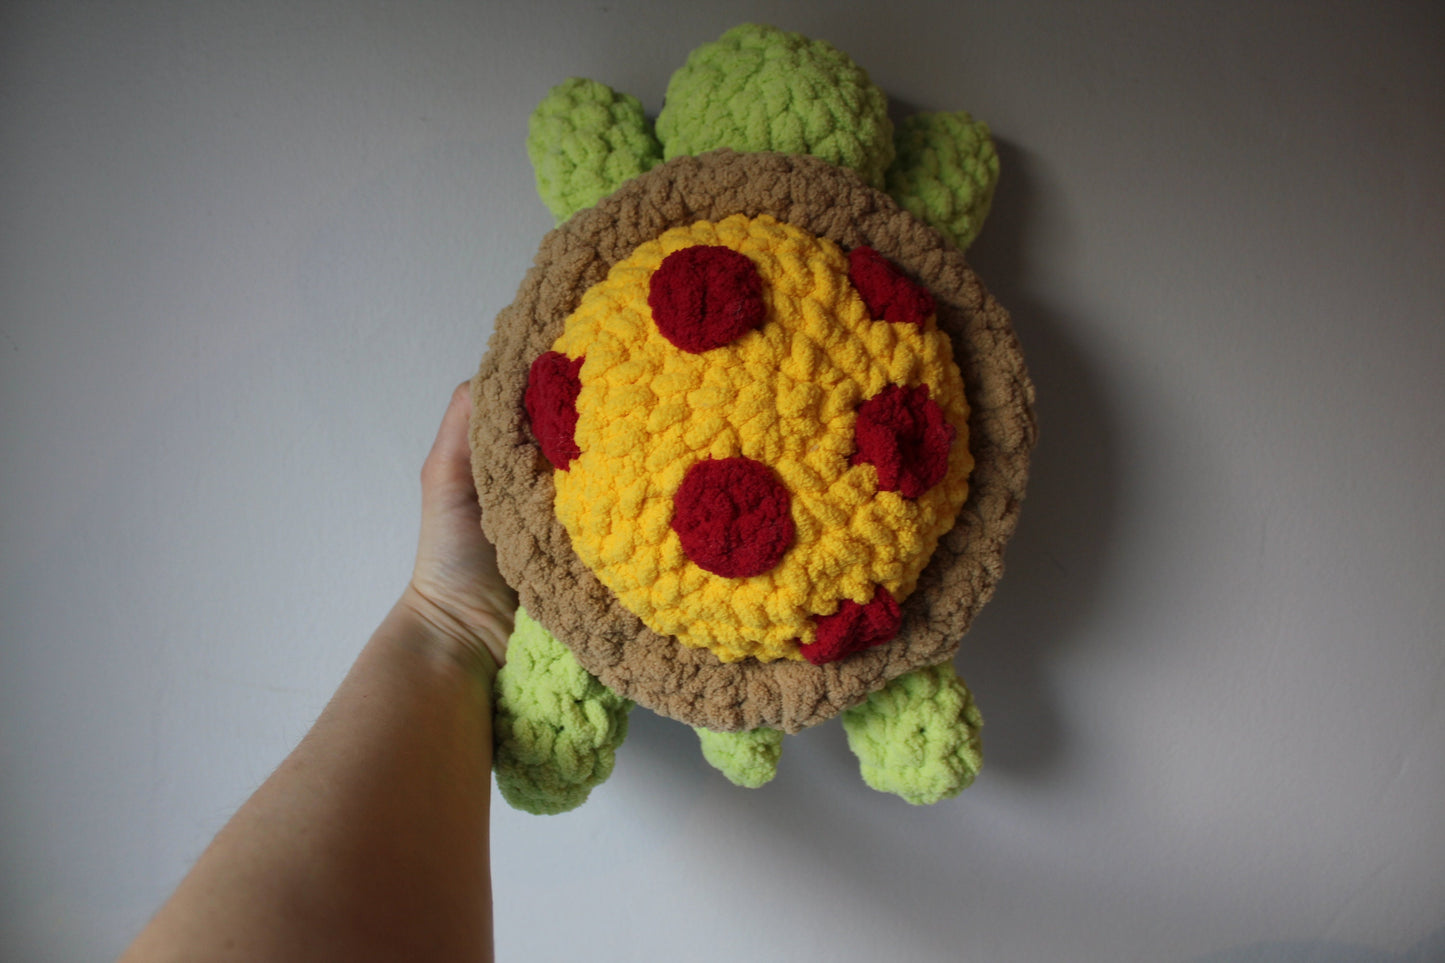 Pizza Turtle Stuffed Animal